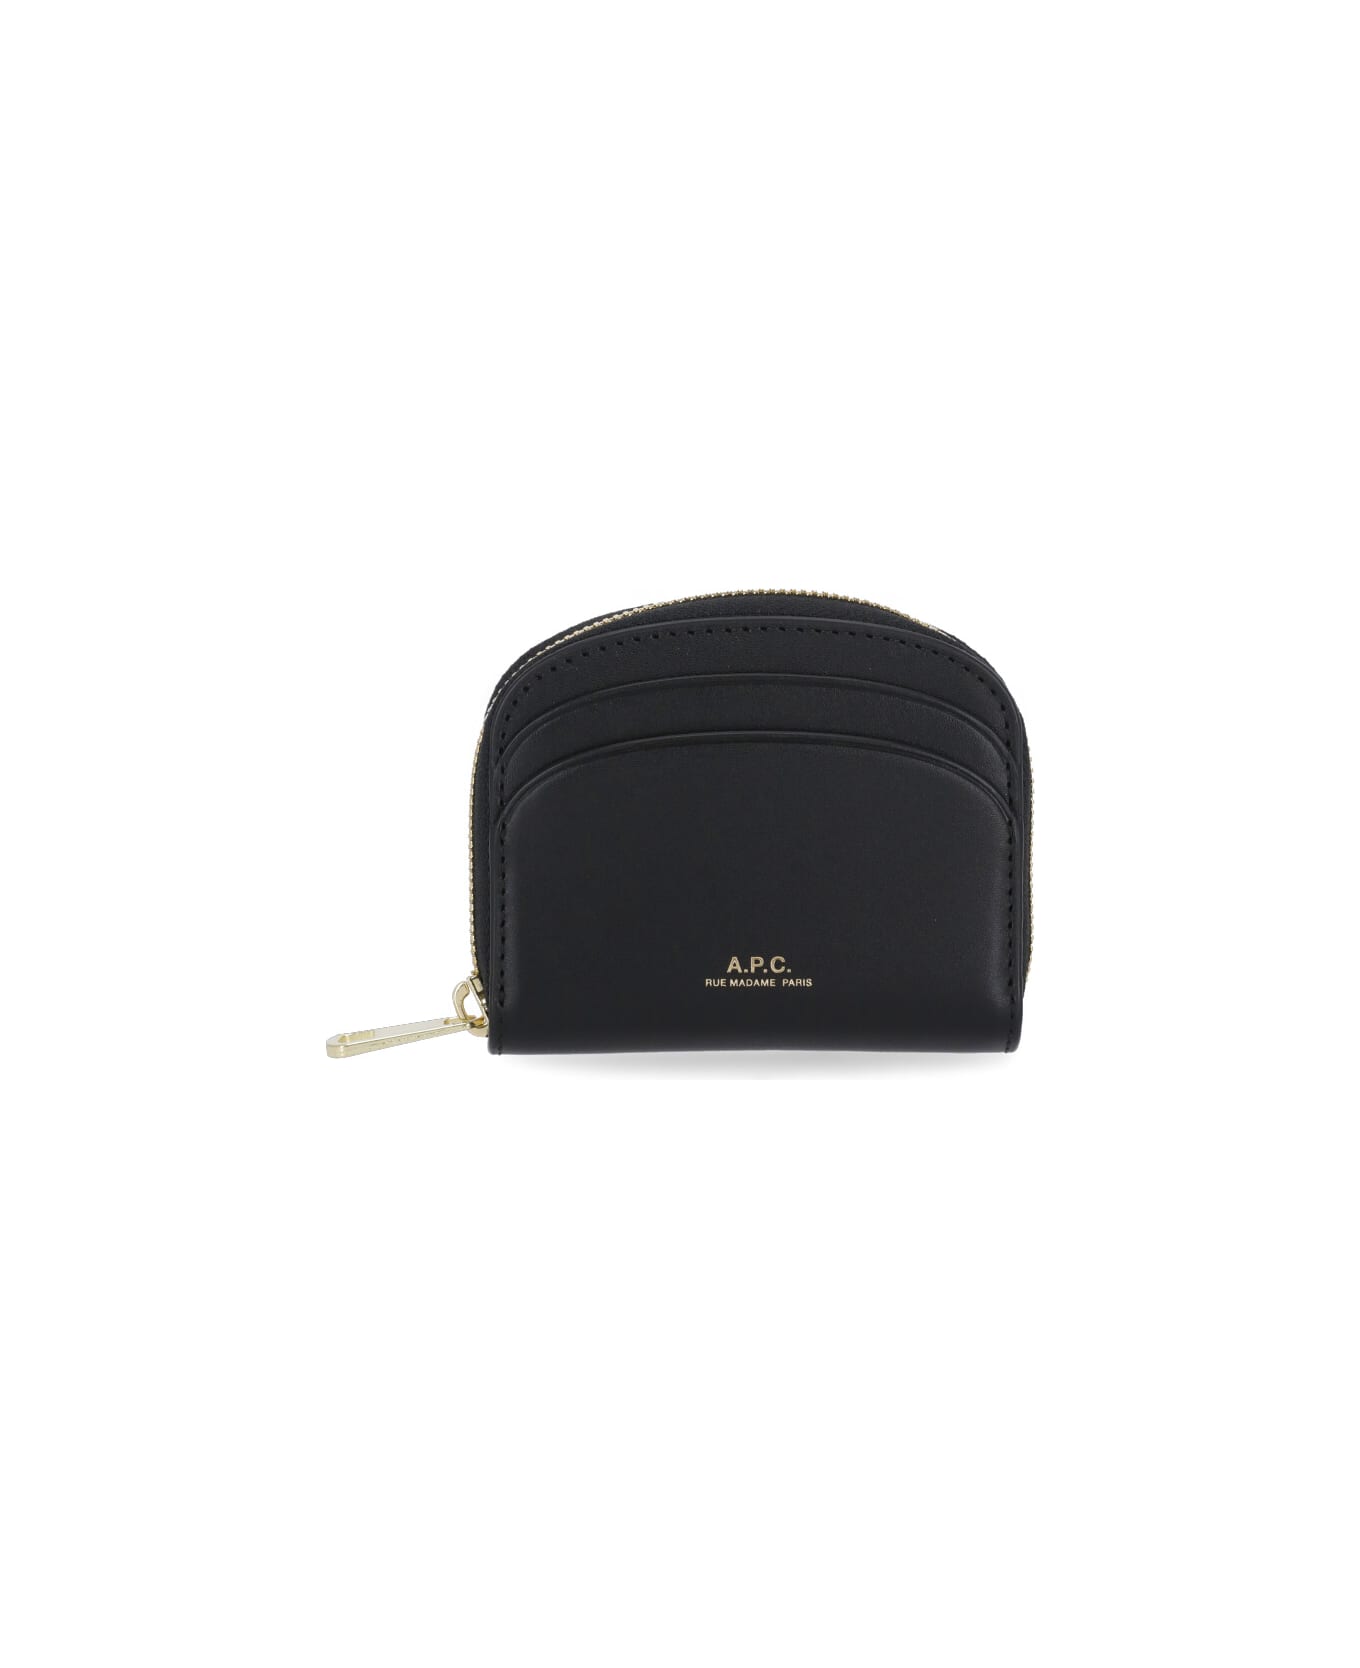 A.P.C. Demi Lune Mini Leather Wallet - Black